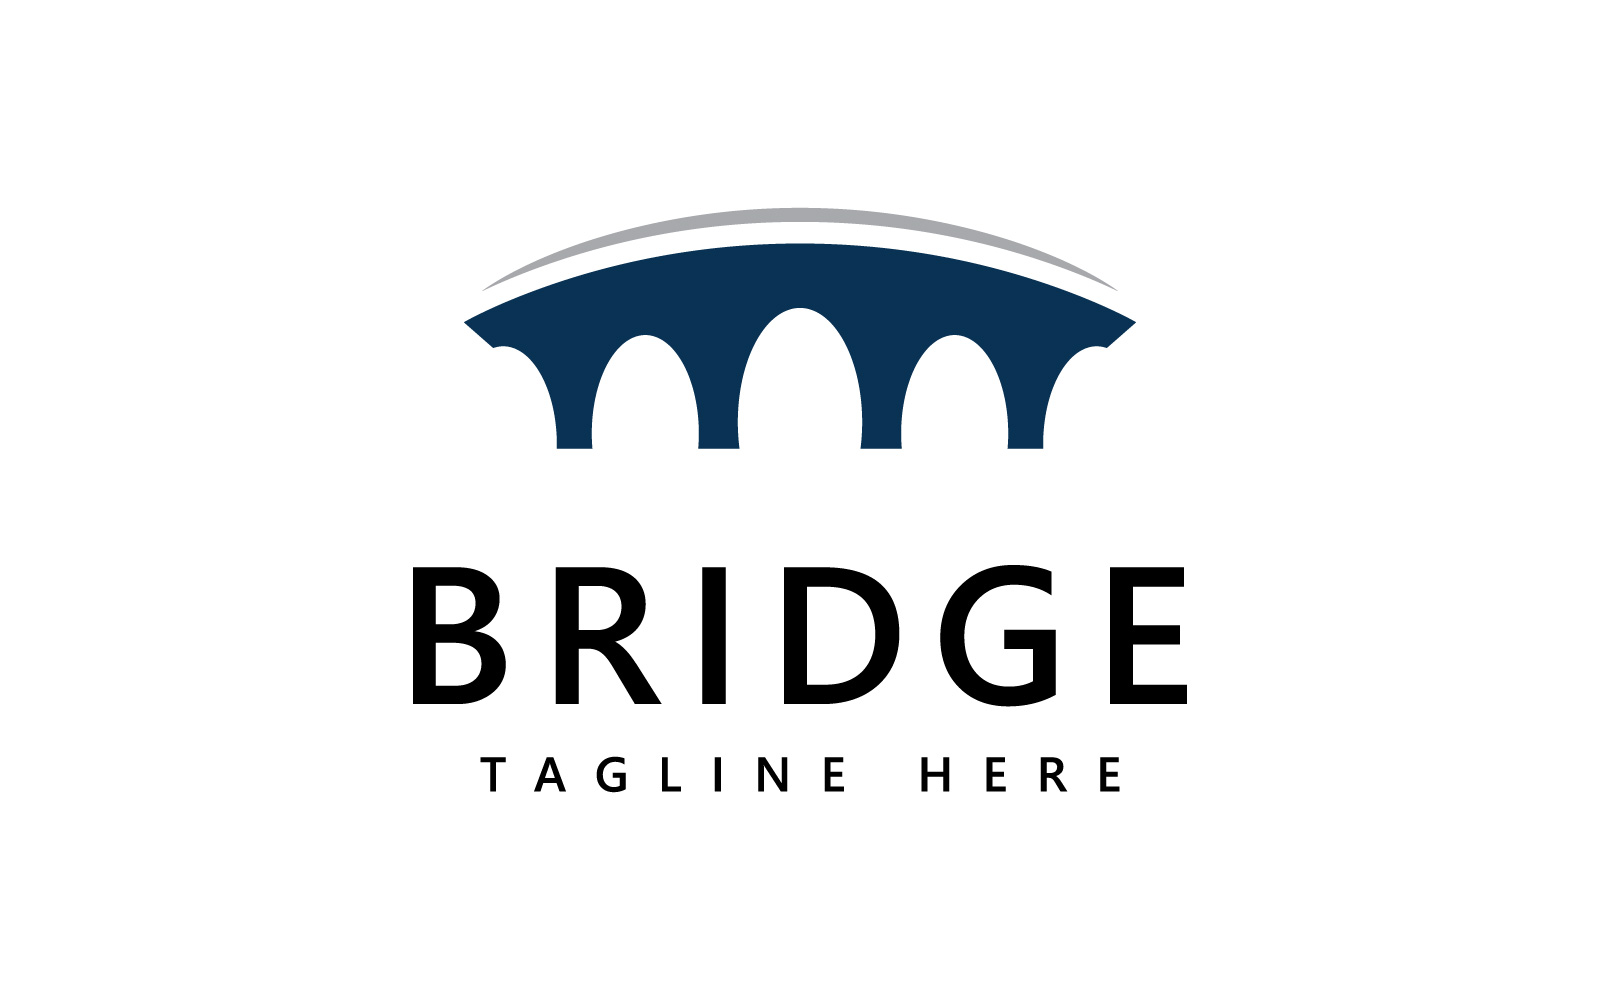 Bridge logo icon design template V1